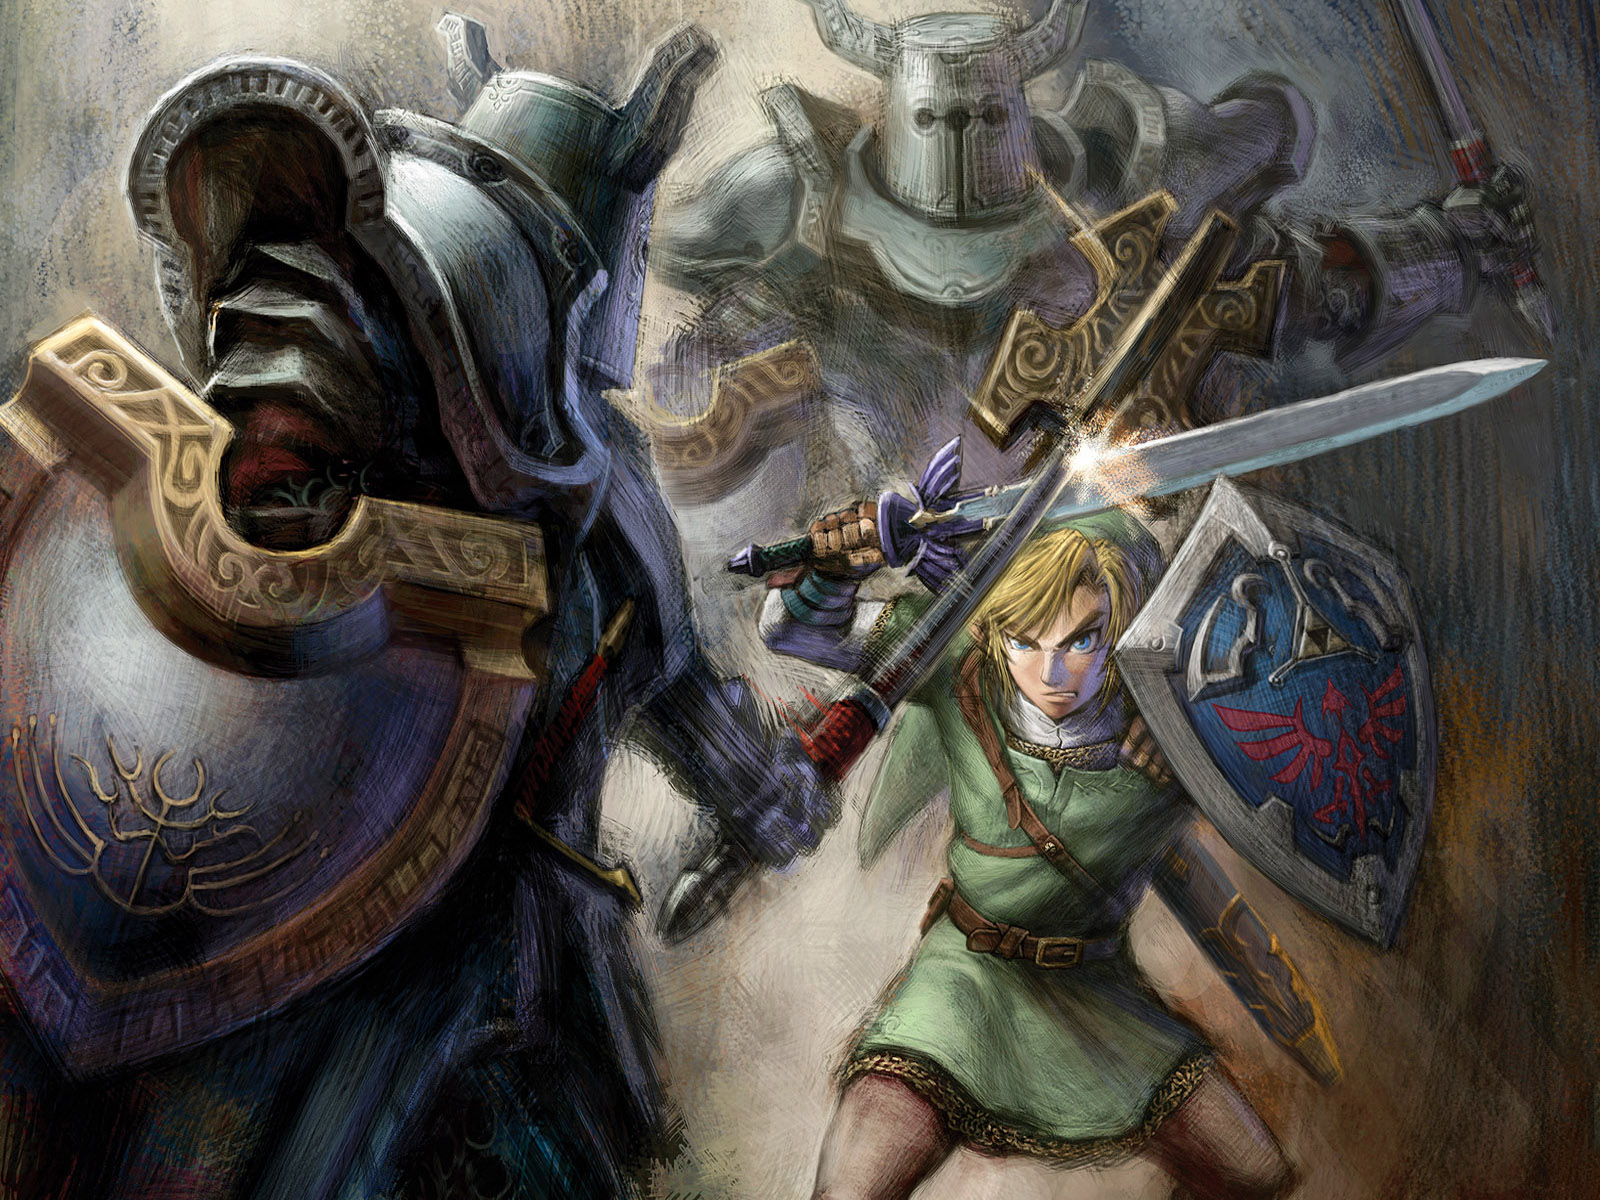 The Legend Of Zelda Wallpapers